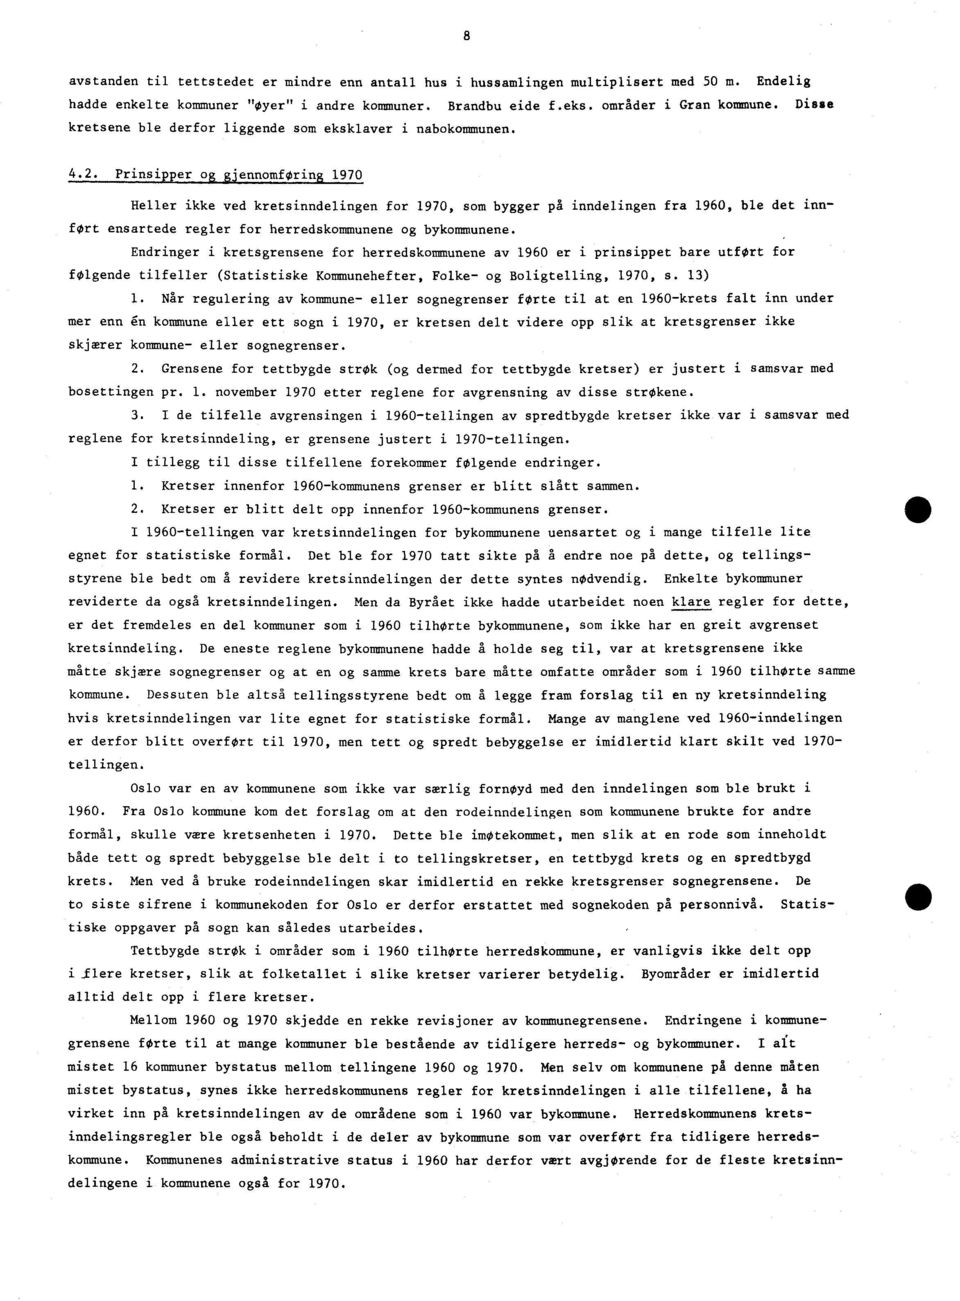 Prinsipper og zjennomforing 1970 Heller ikke ved kretsinndelingen for 1970, som bygger på inndelingen fra 1960, ble det innført ensartede regler for herredskommunene og bykommunene.